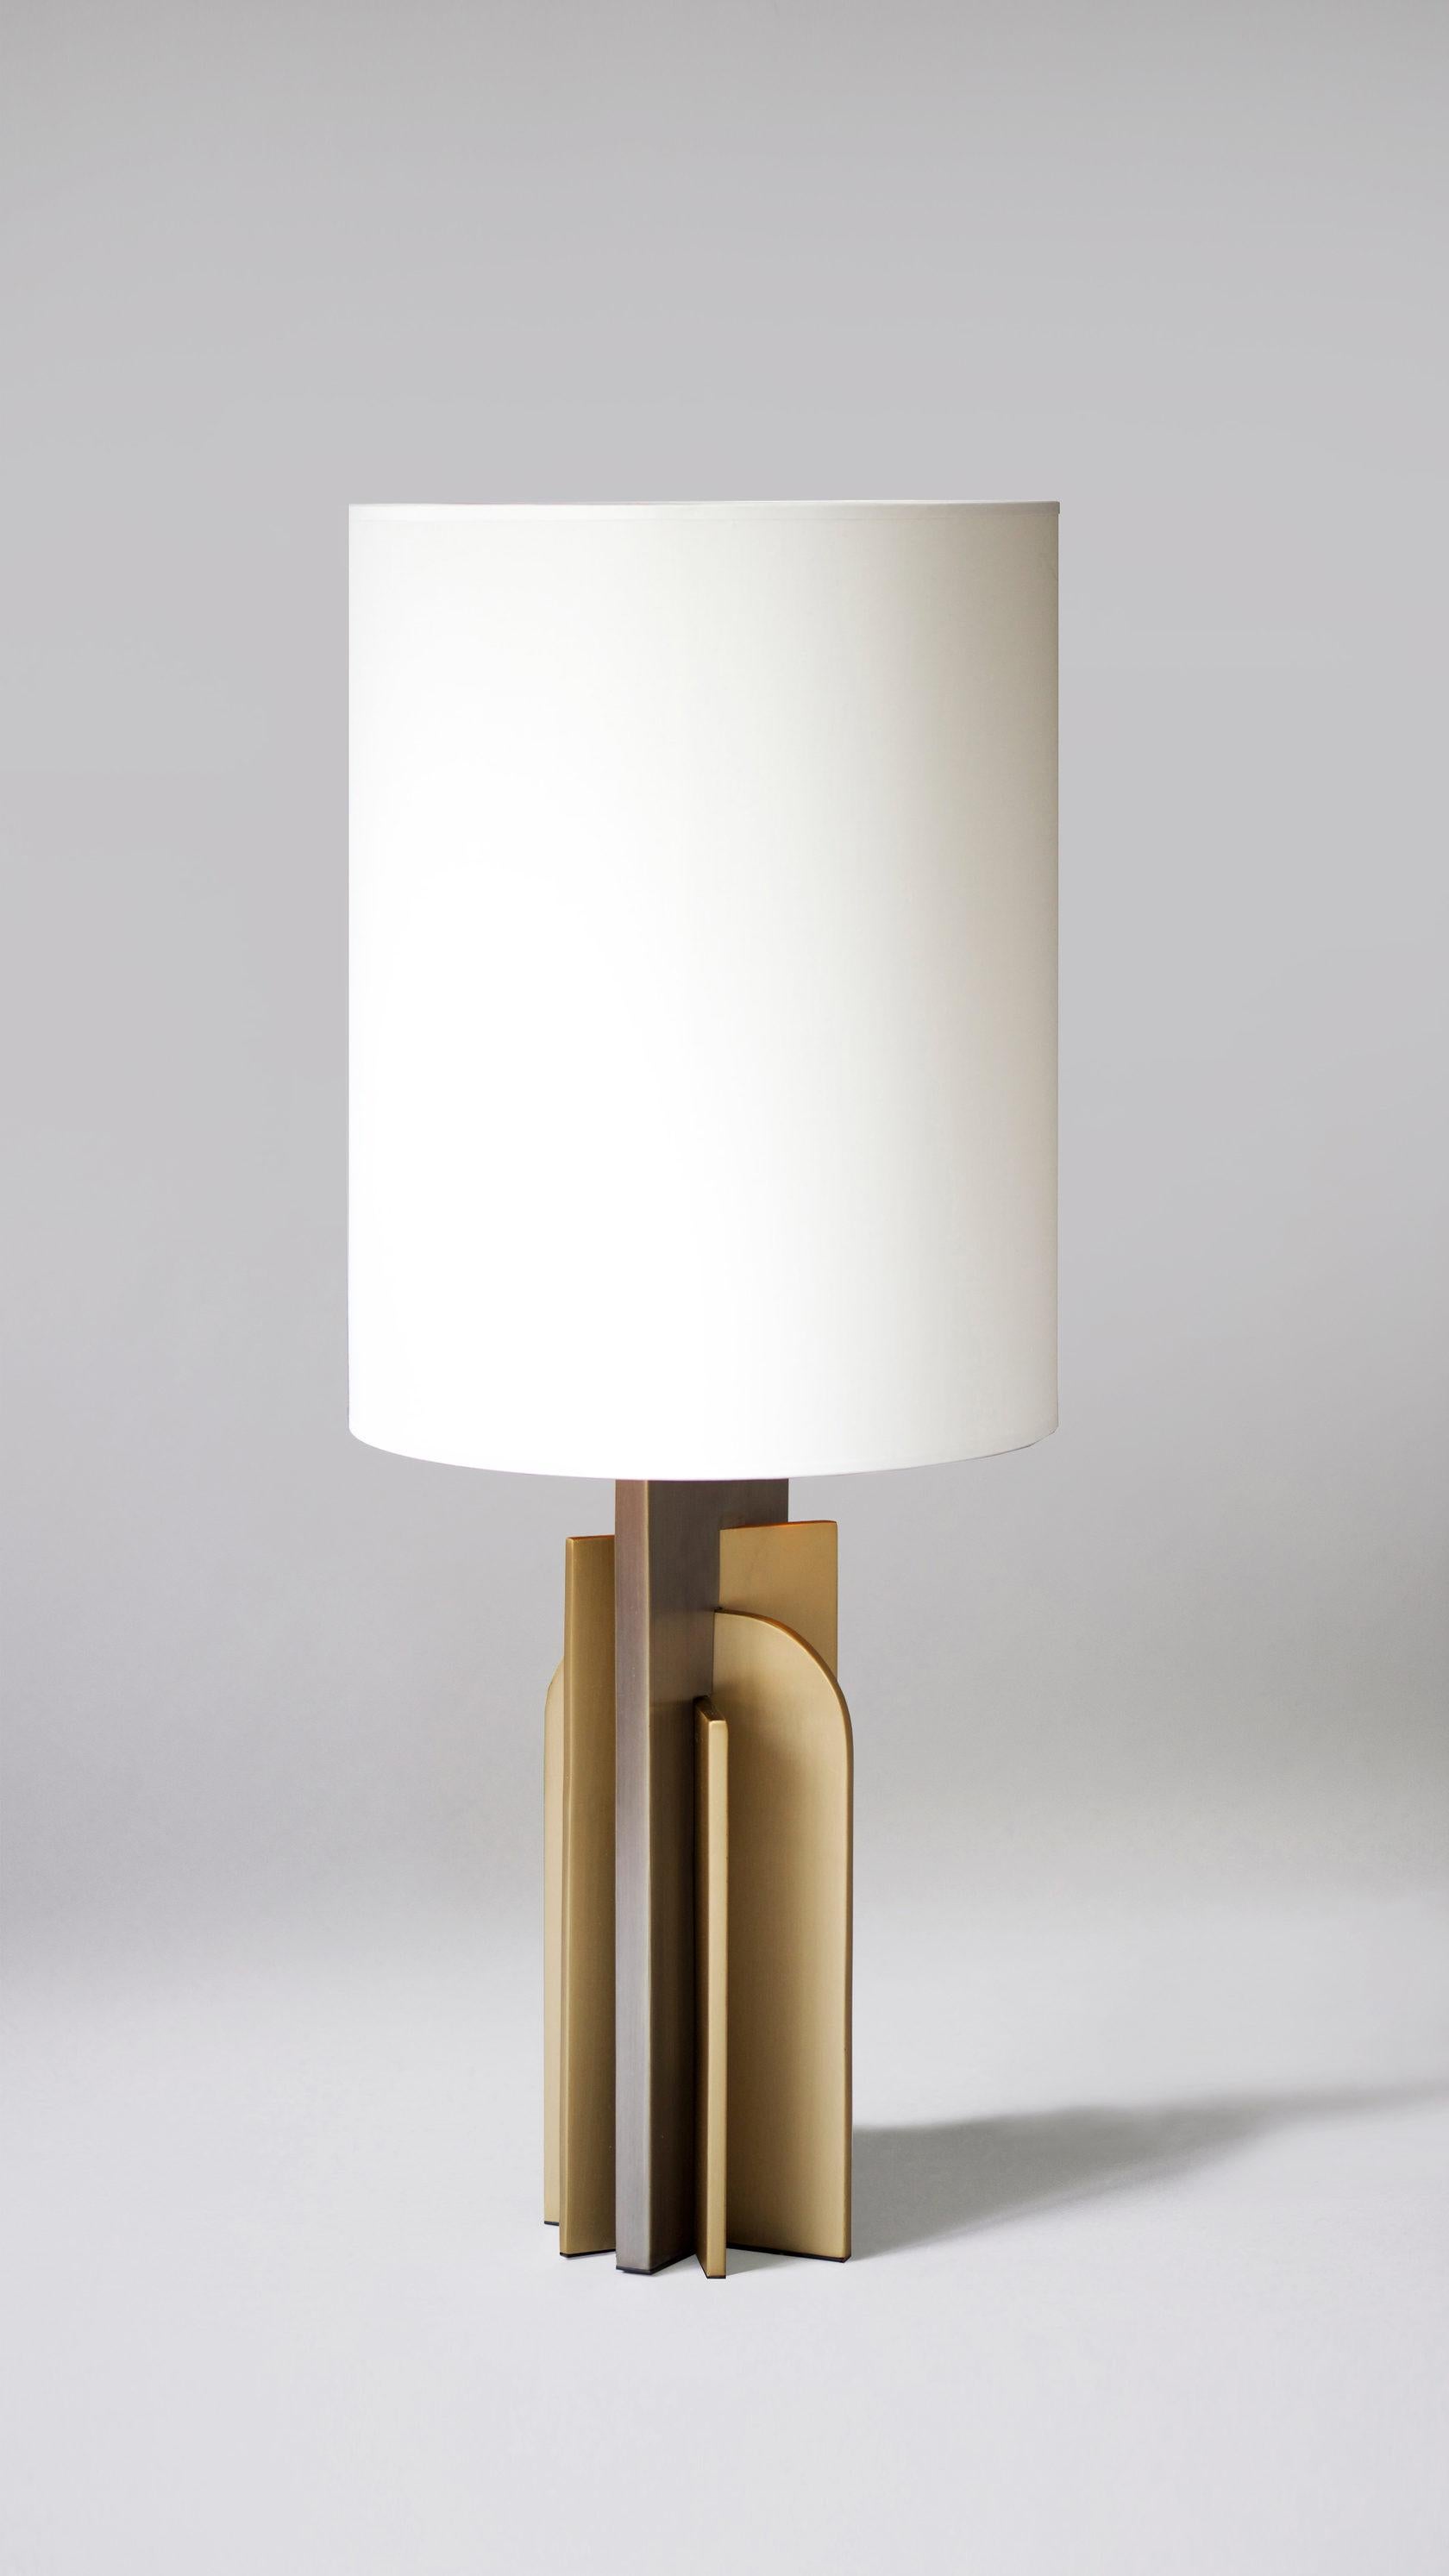 Lampe de table iconique en laiton par Square in Circle
Dimensions : 17 L x 14 P x 90 H cm
MATERIAL : Finition en laiton brossé, métal brossé foncé, gris, abat-jour en coton blanc avec doublure dorée. 

Lampe de table moderniste surdimensionnée. La